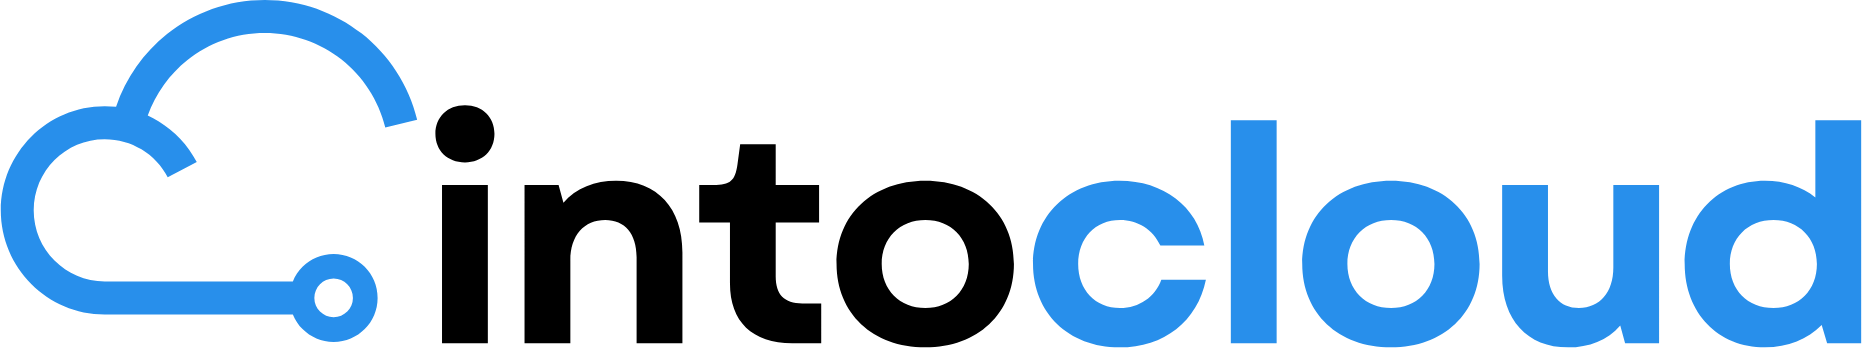 niebieska ikona chmury i czarnoniebieski napis intocloud, jako logotyp strony oferującej usługi chmurowe